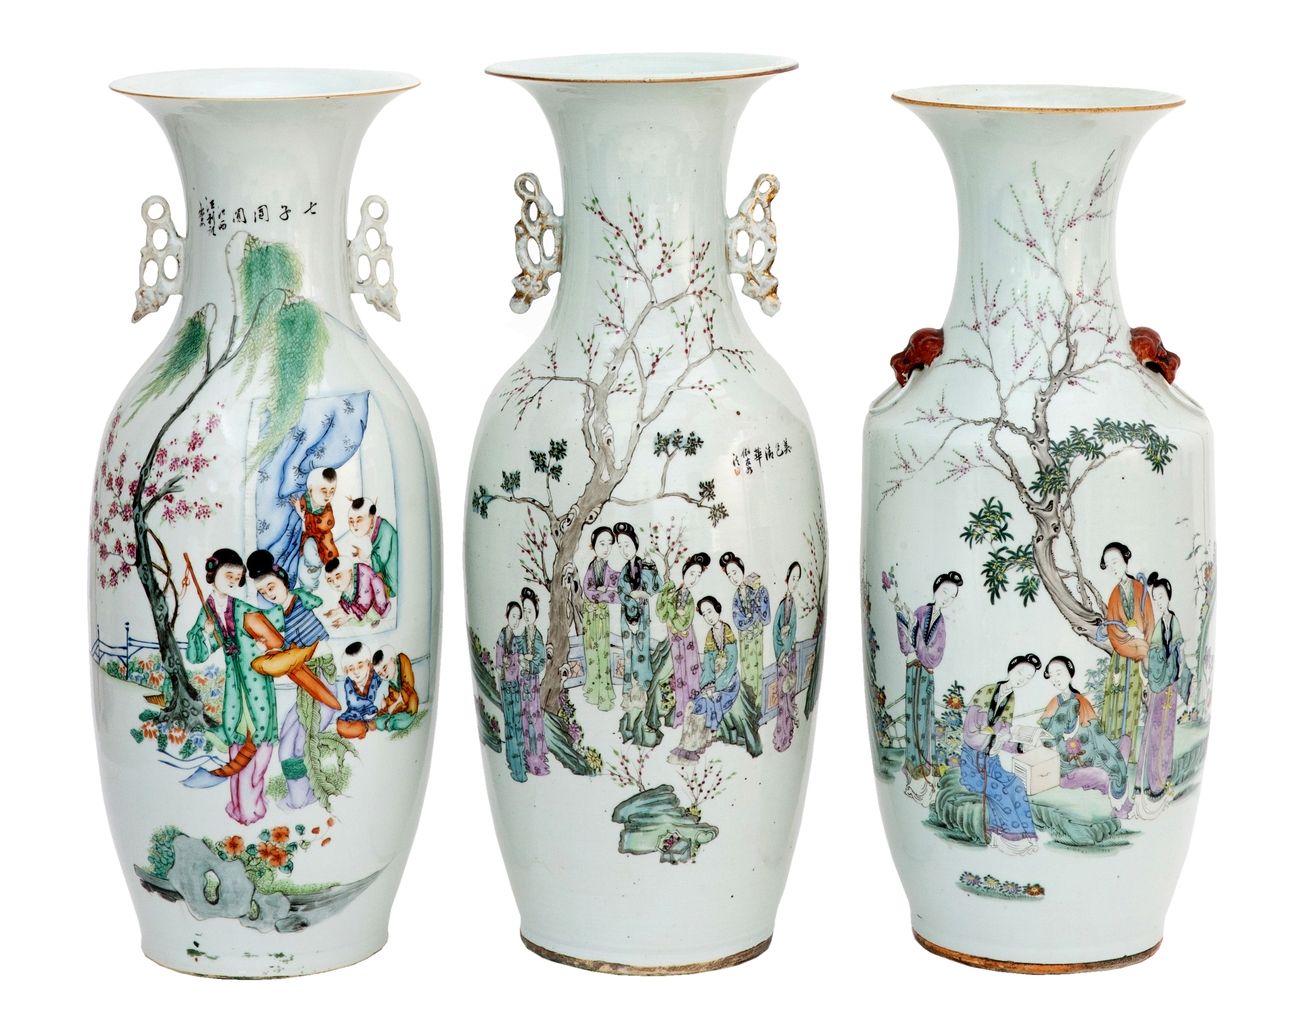 Null China, siglo XIX-XX
Lote de tres jarrones de porcelana con diversas decorac&hellip;